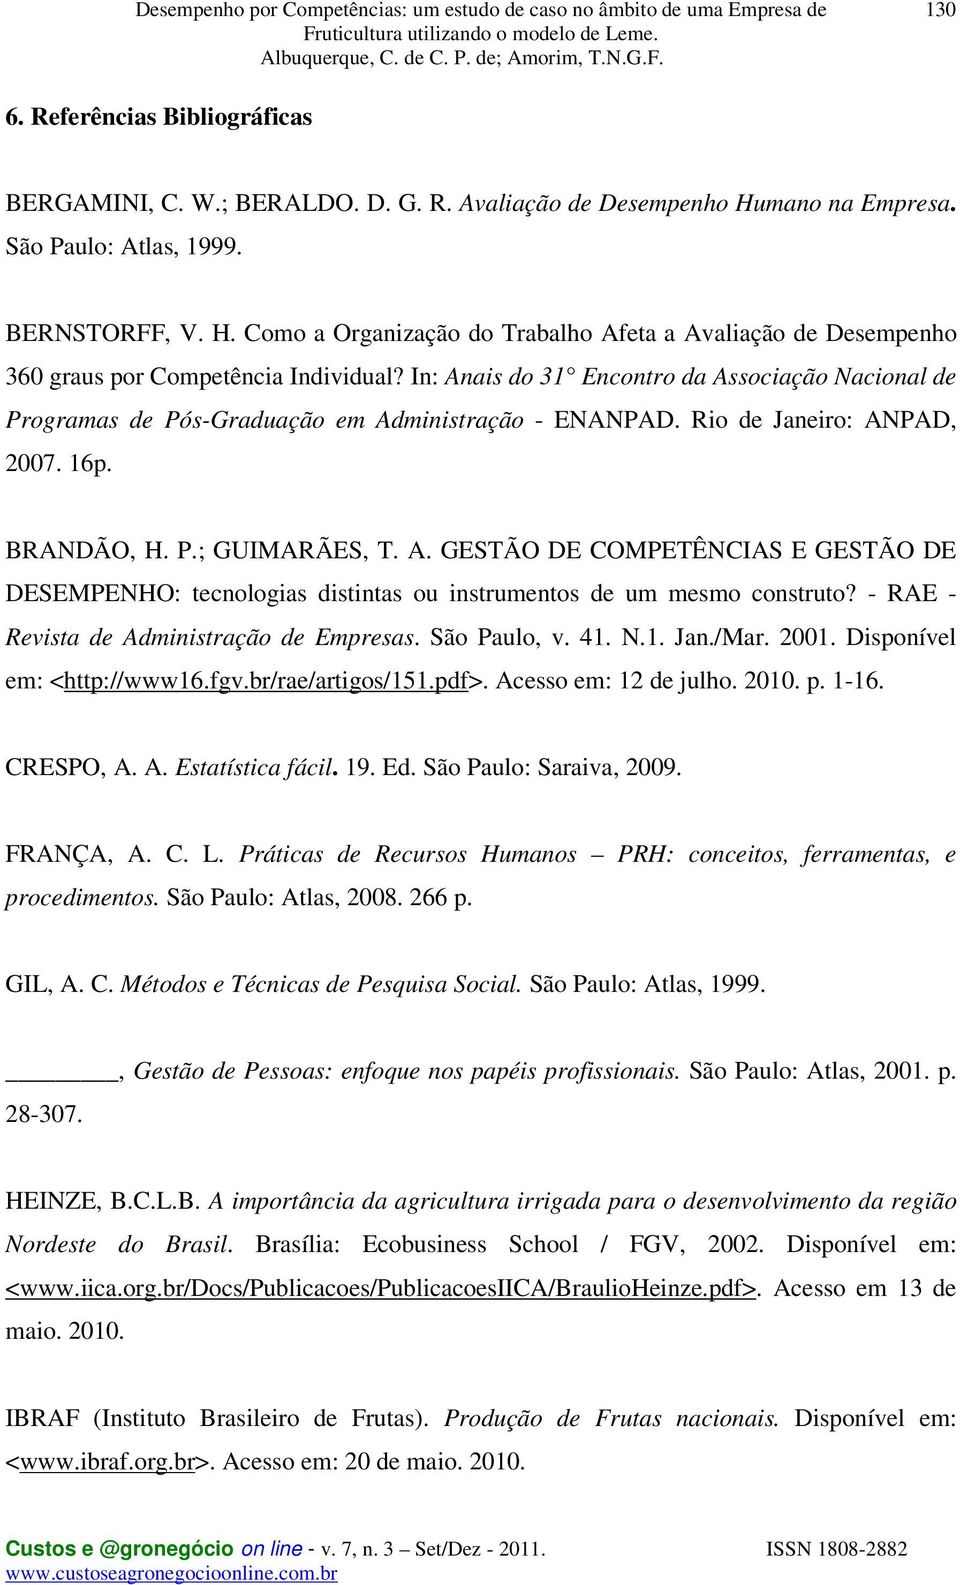 - RAE - Revista de Administração de Empresas. São Paulo, v. 41. N.1. Jan./Mar. 2001. Disponível em: <http://www16.fgv.br/rae/artigos/151.pdf>. Acesso em: 12 de julho. 2010. p. 1-16. CRESPO, A. A. Estatística fácil.